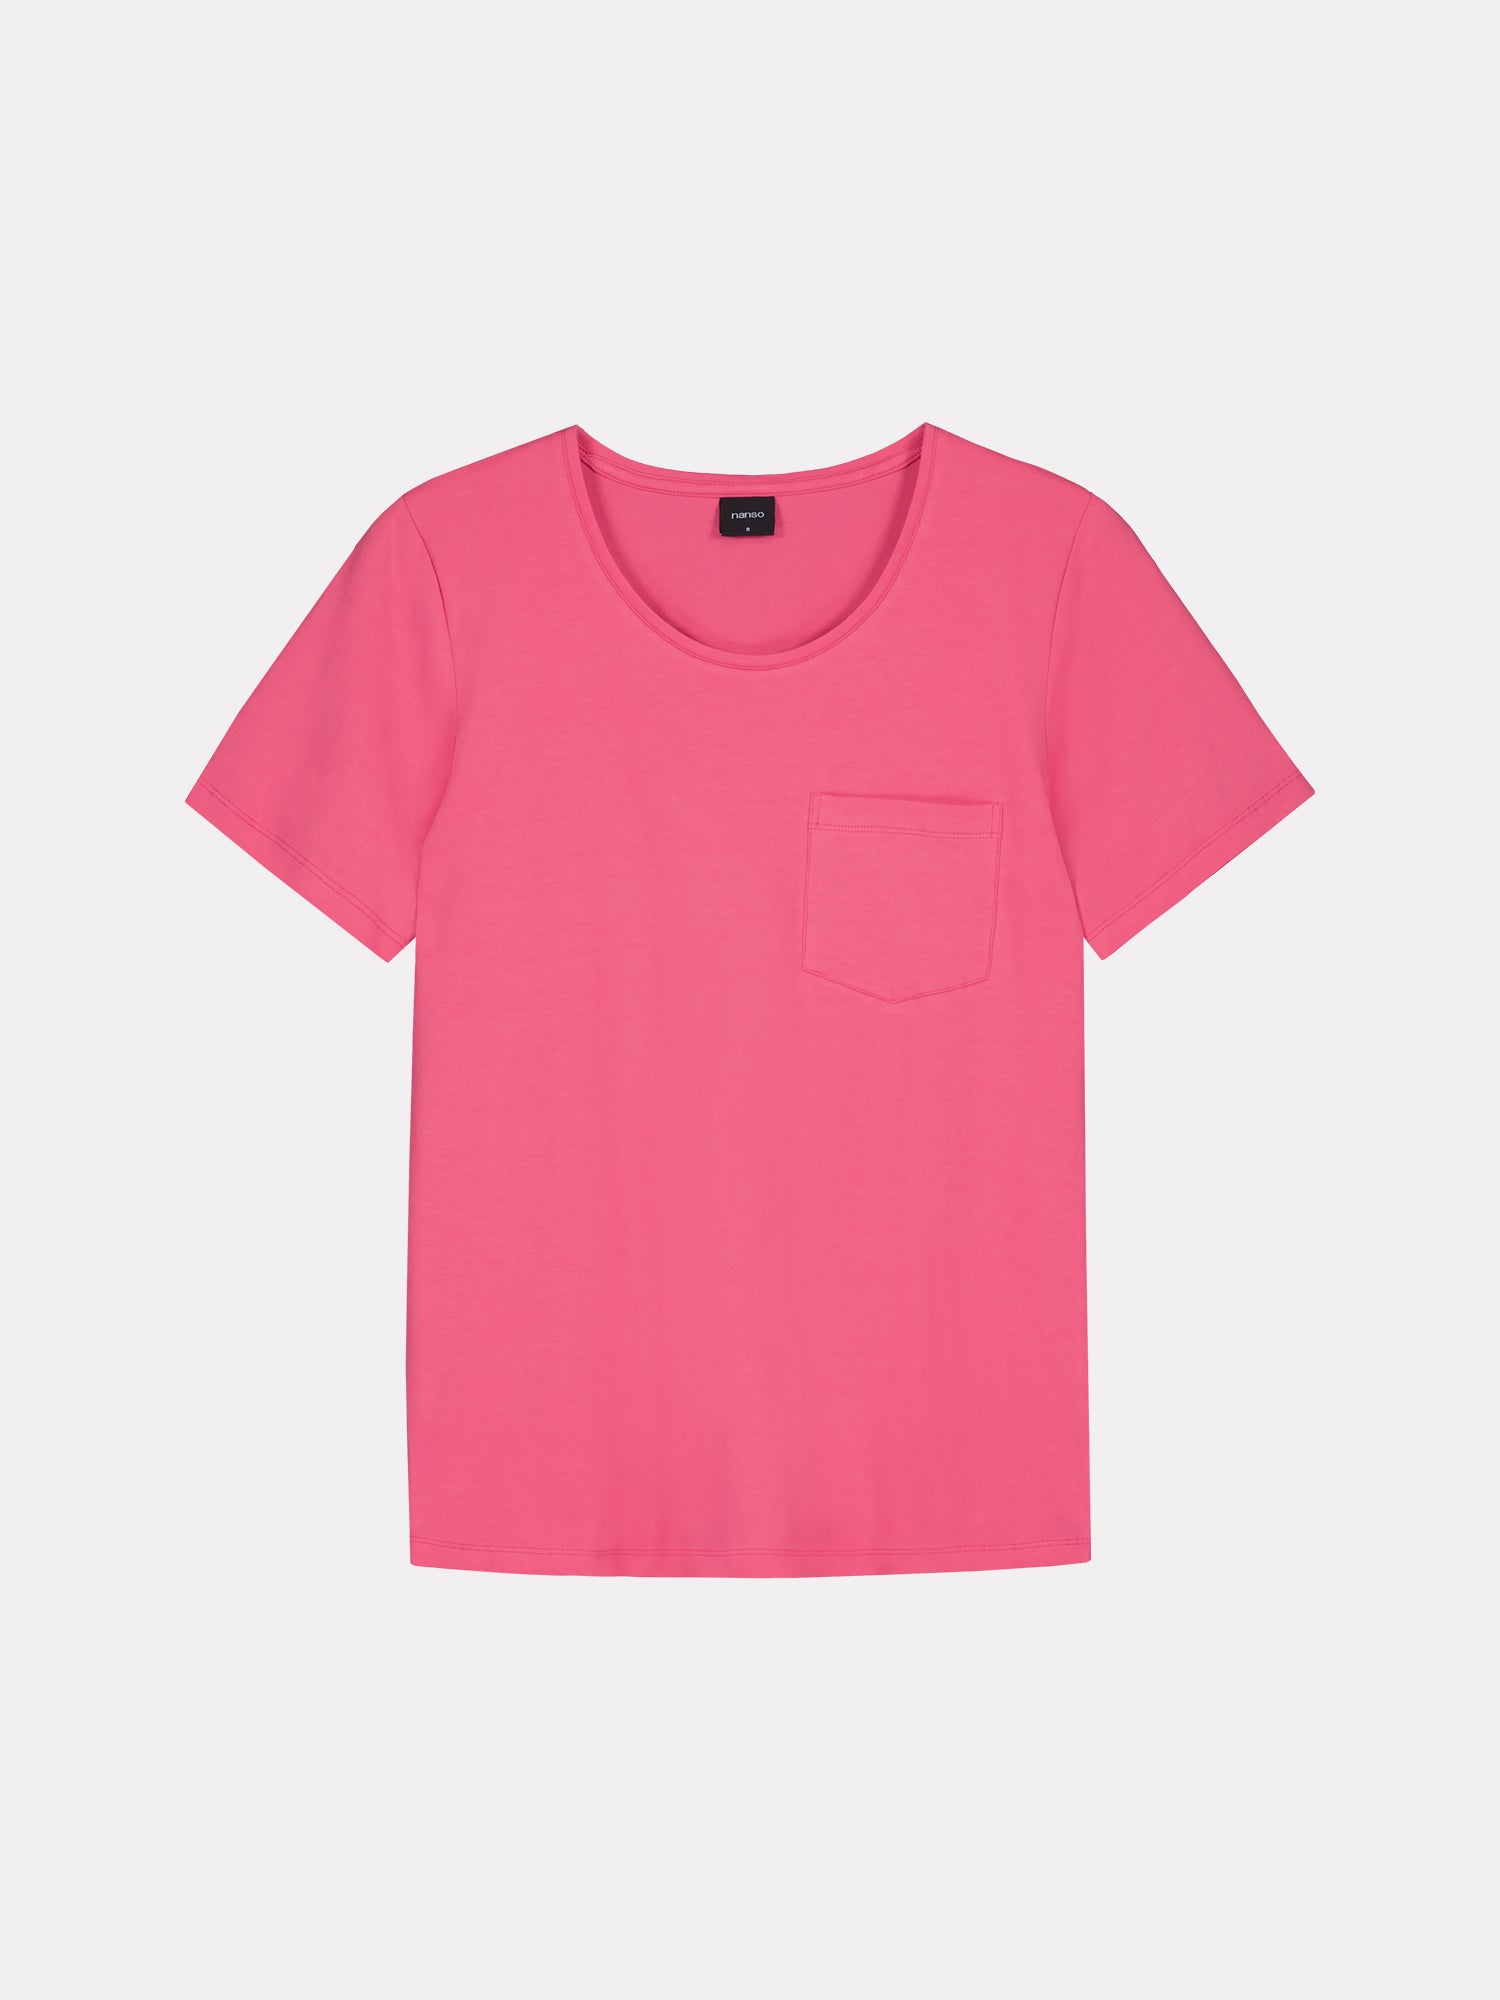 Nanson naisten raikas pinkki Tasku t-paita pyöreällä pääntiellä.